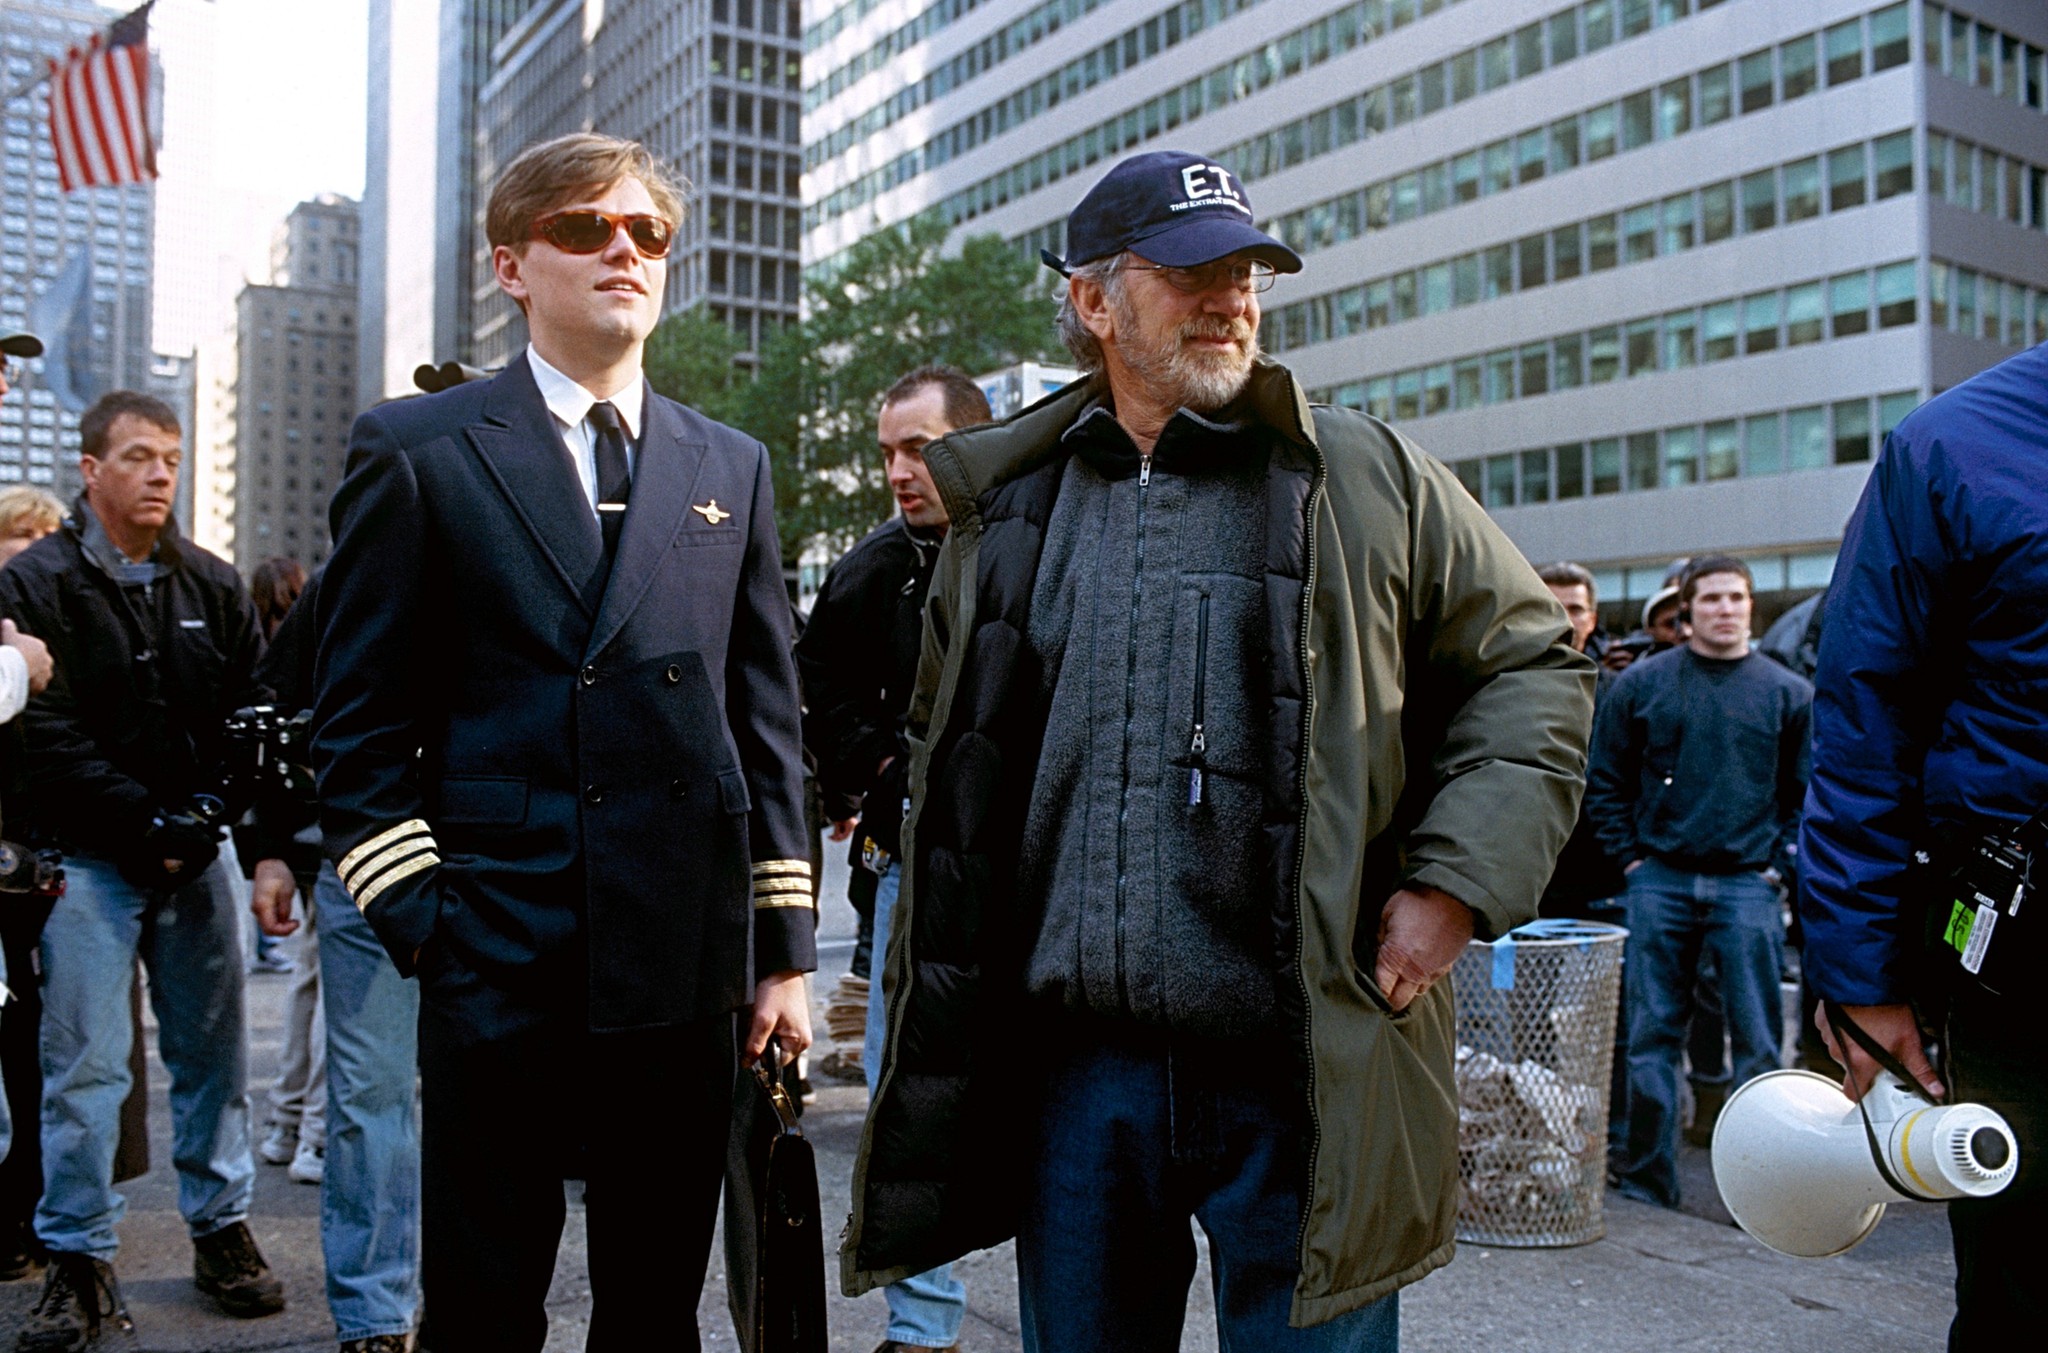 Leonardo DiCaprio and Steven Spielberg in Pagauk, jei gali (2002)